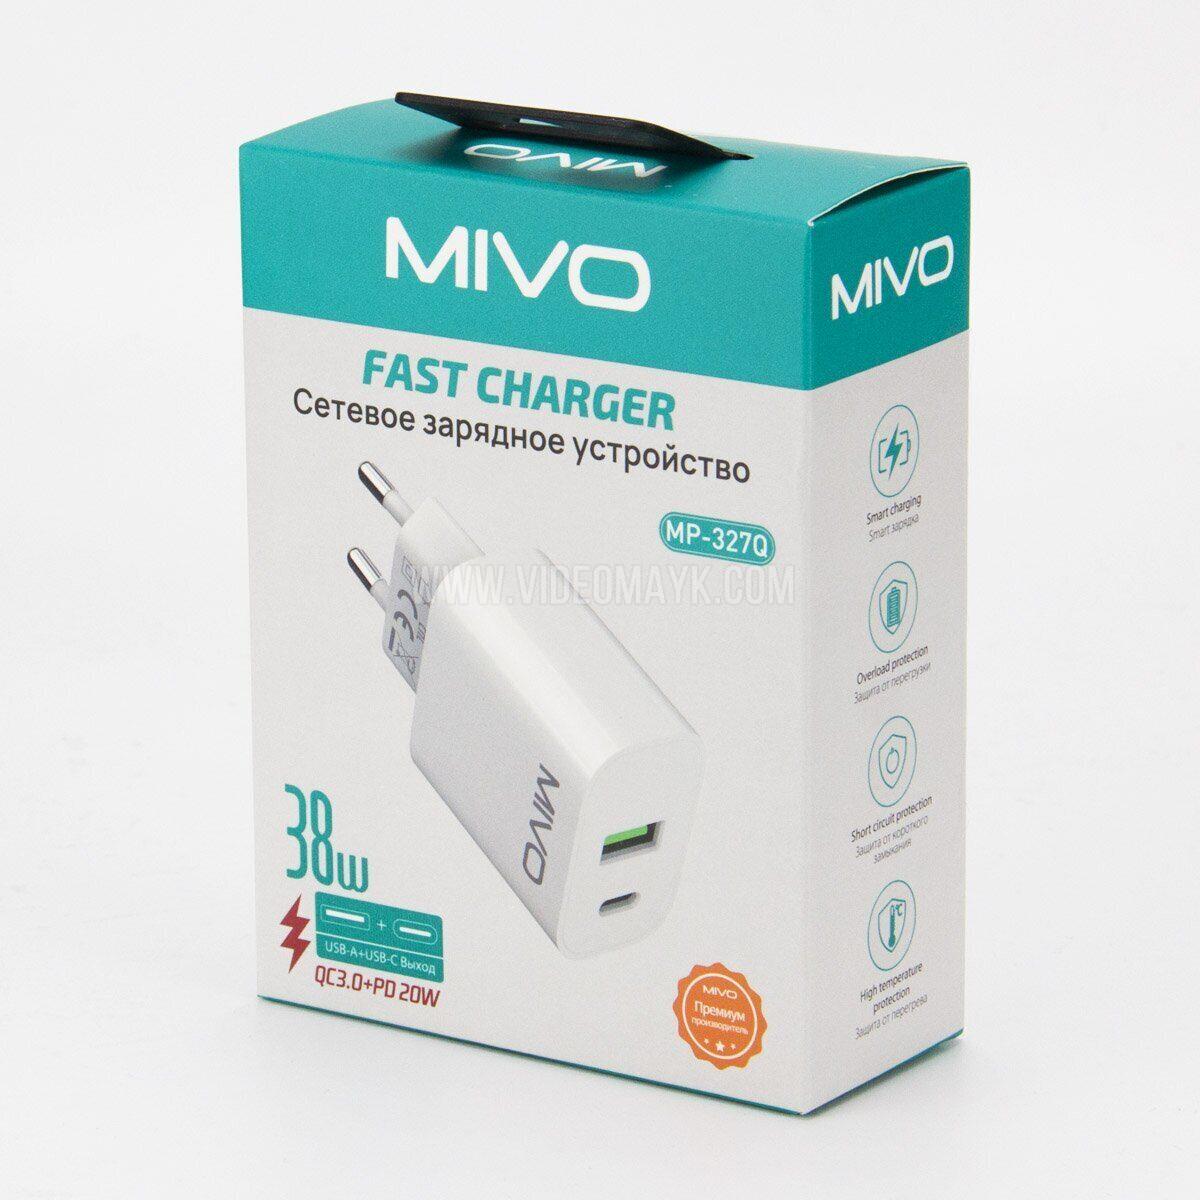 Mivo MP-327Q Сетевое зарядное устройство 38W, USB+Type-C